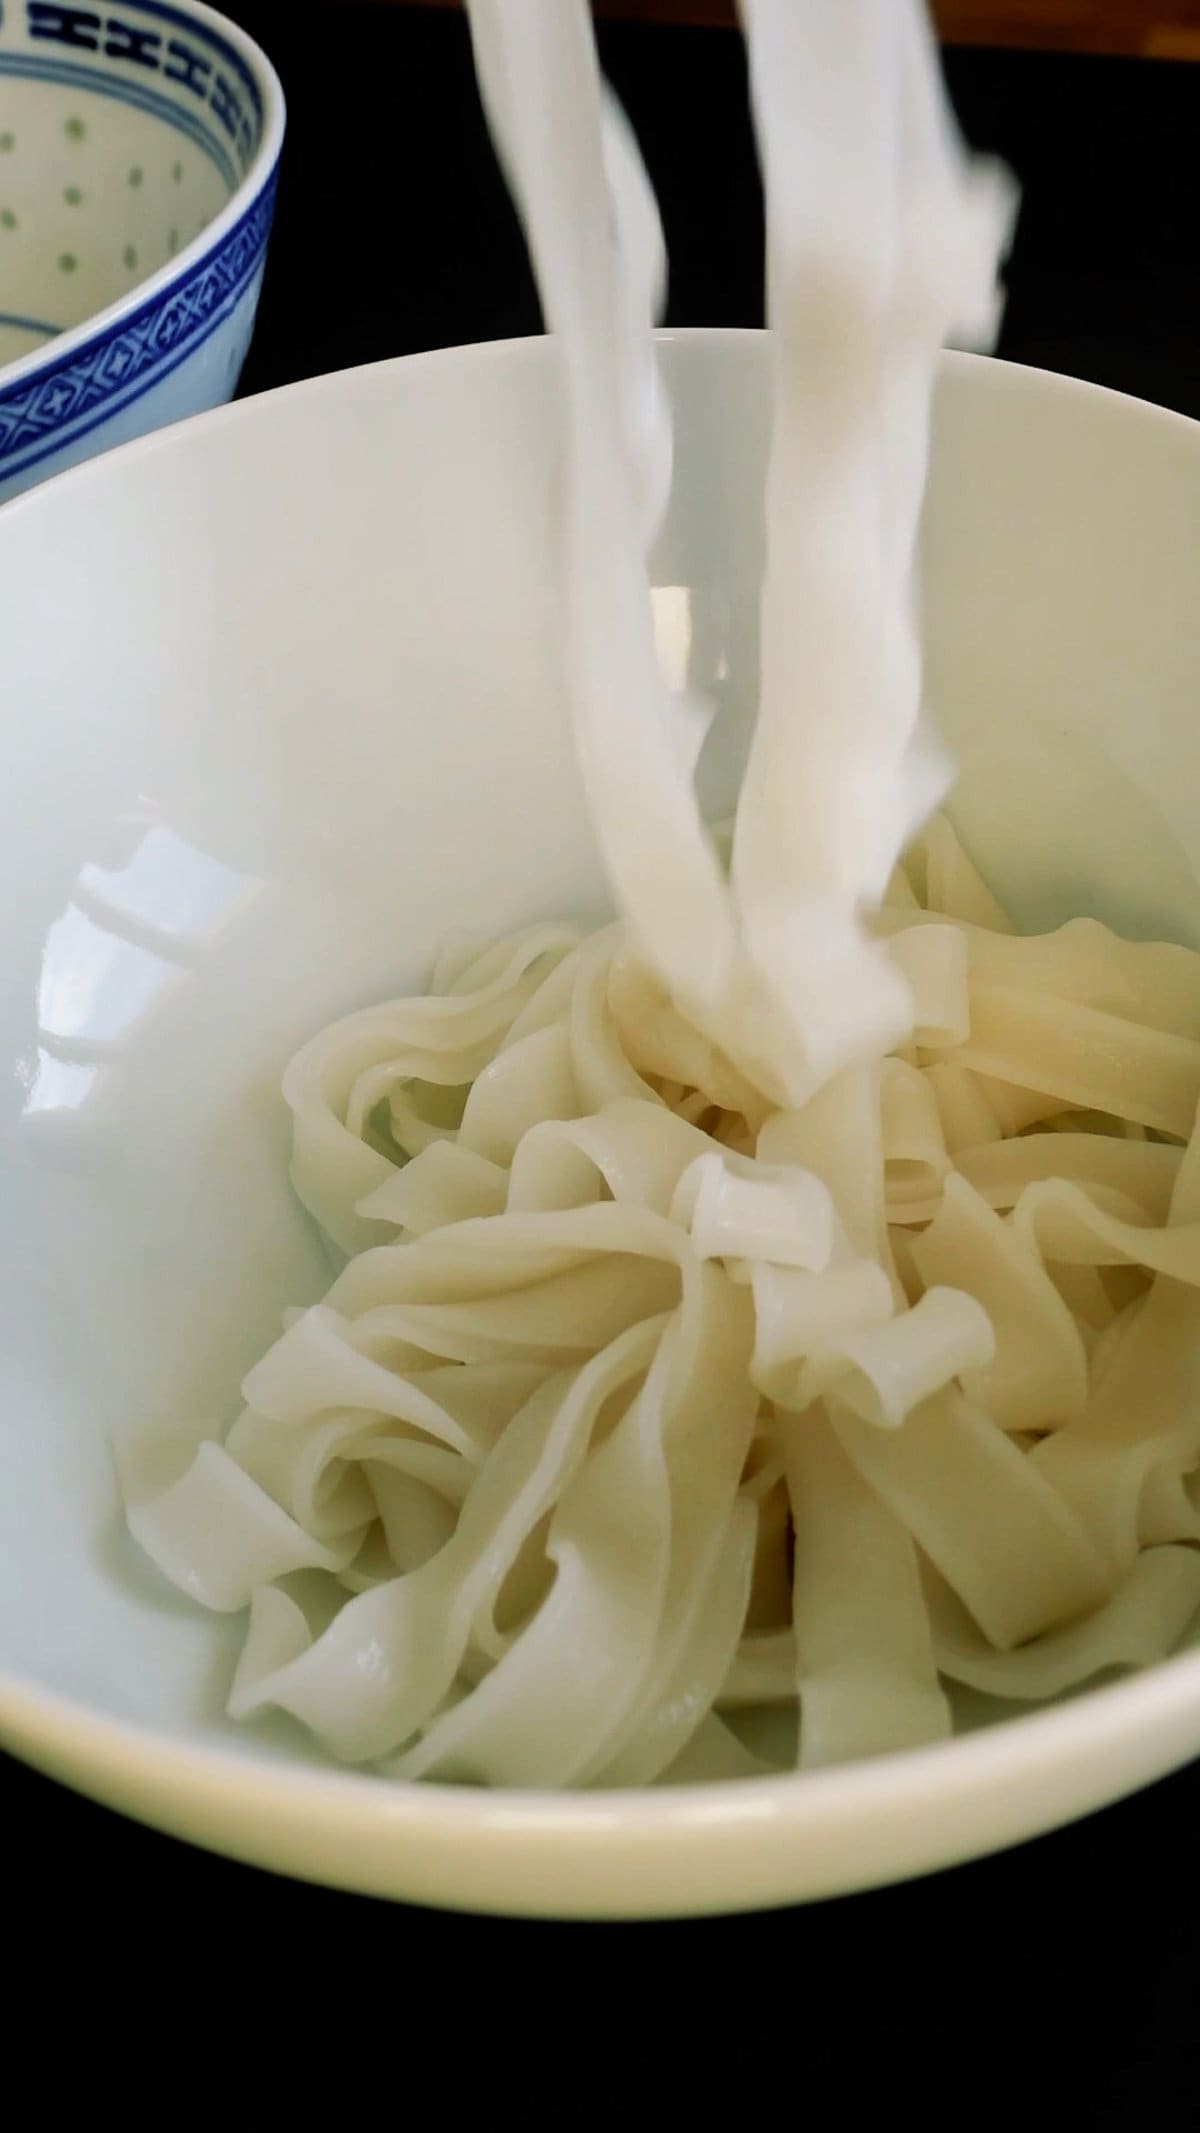 Assemble noodles